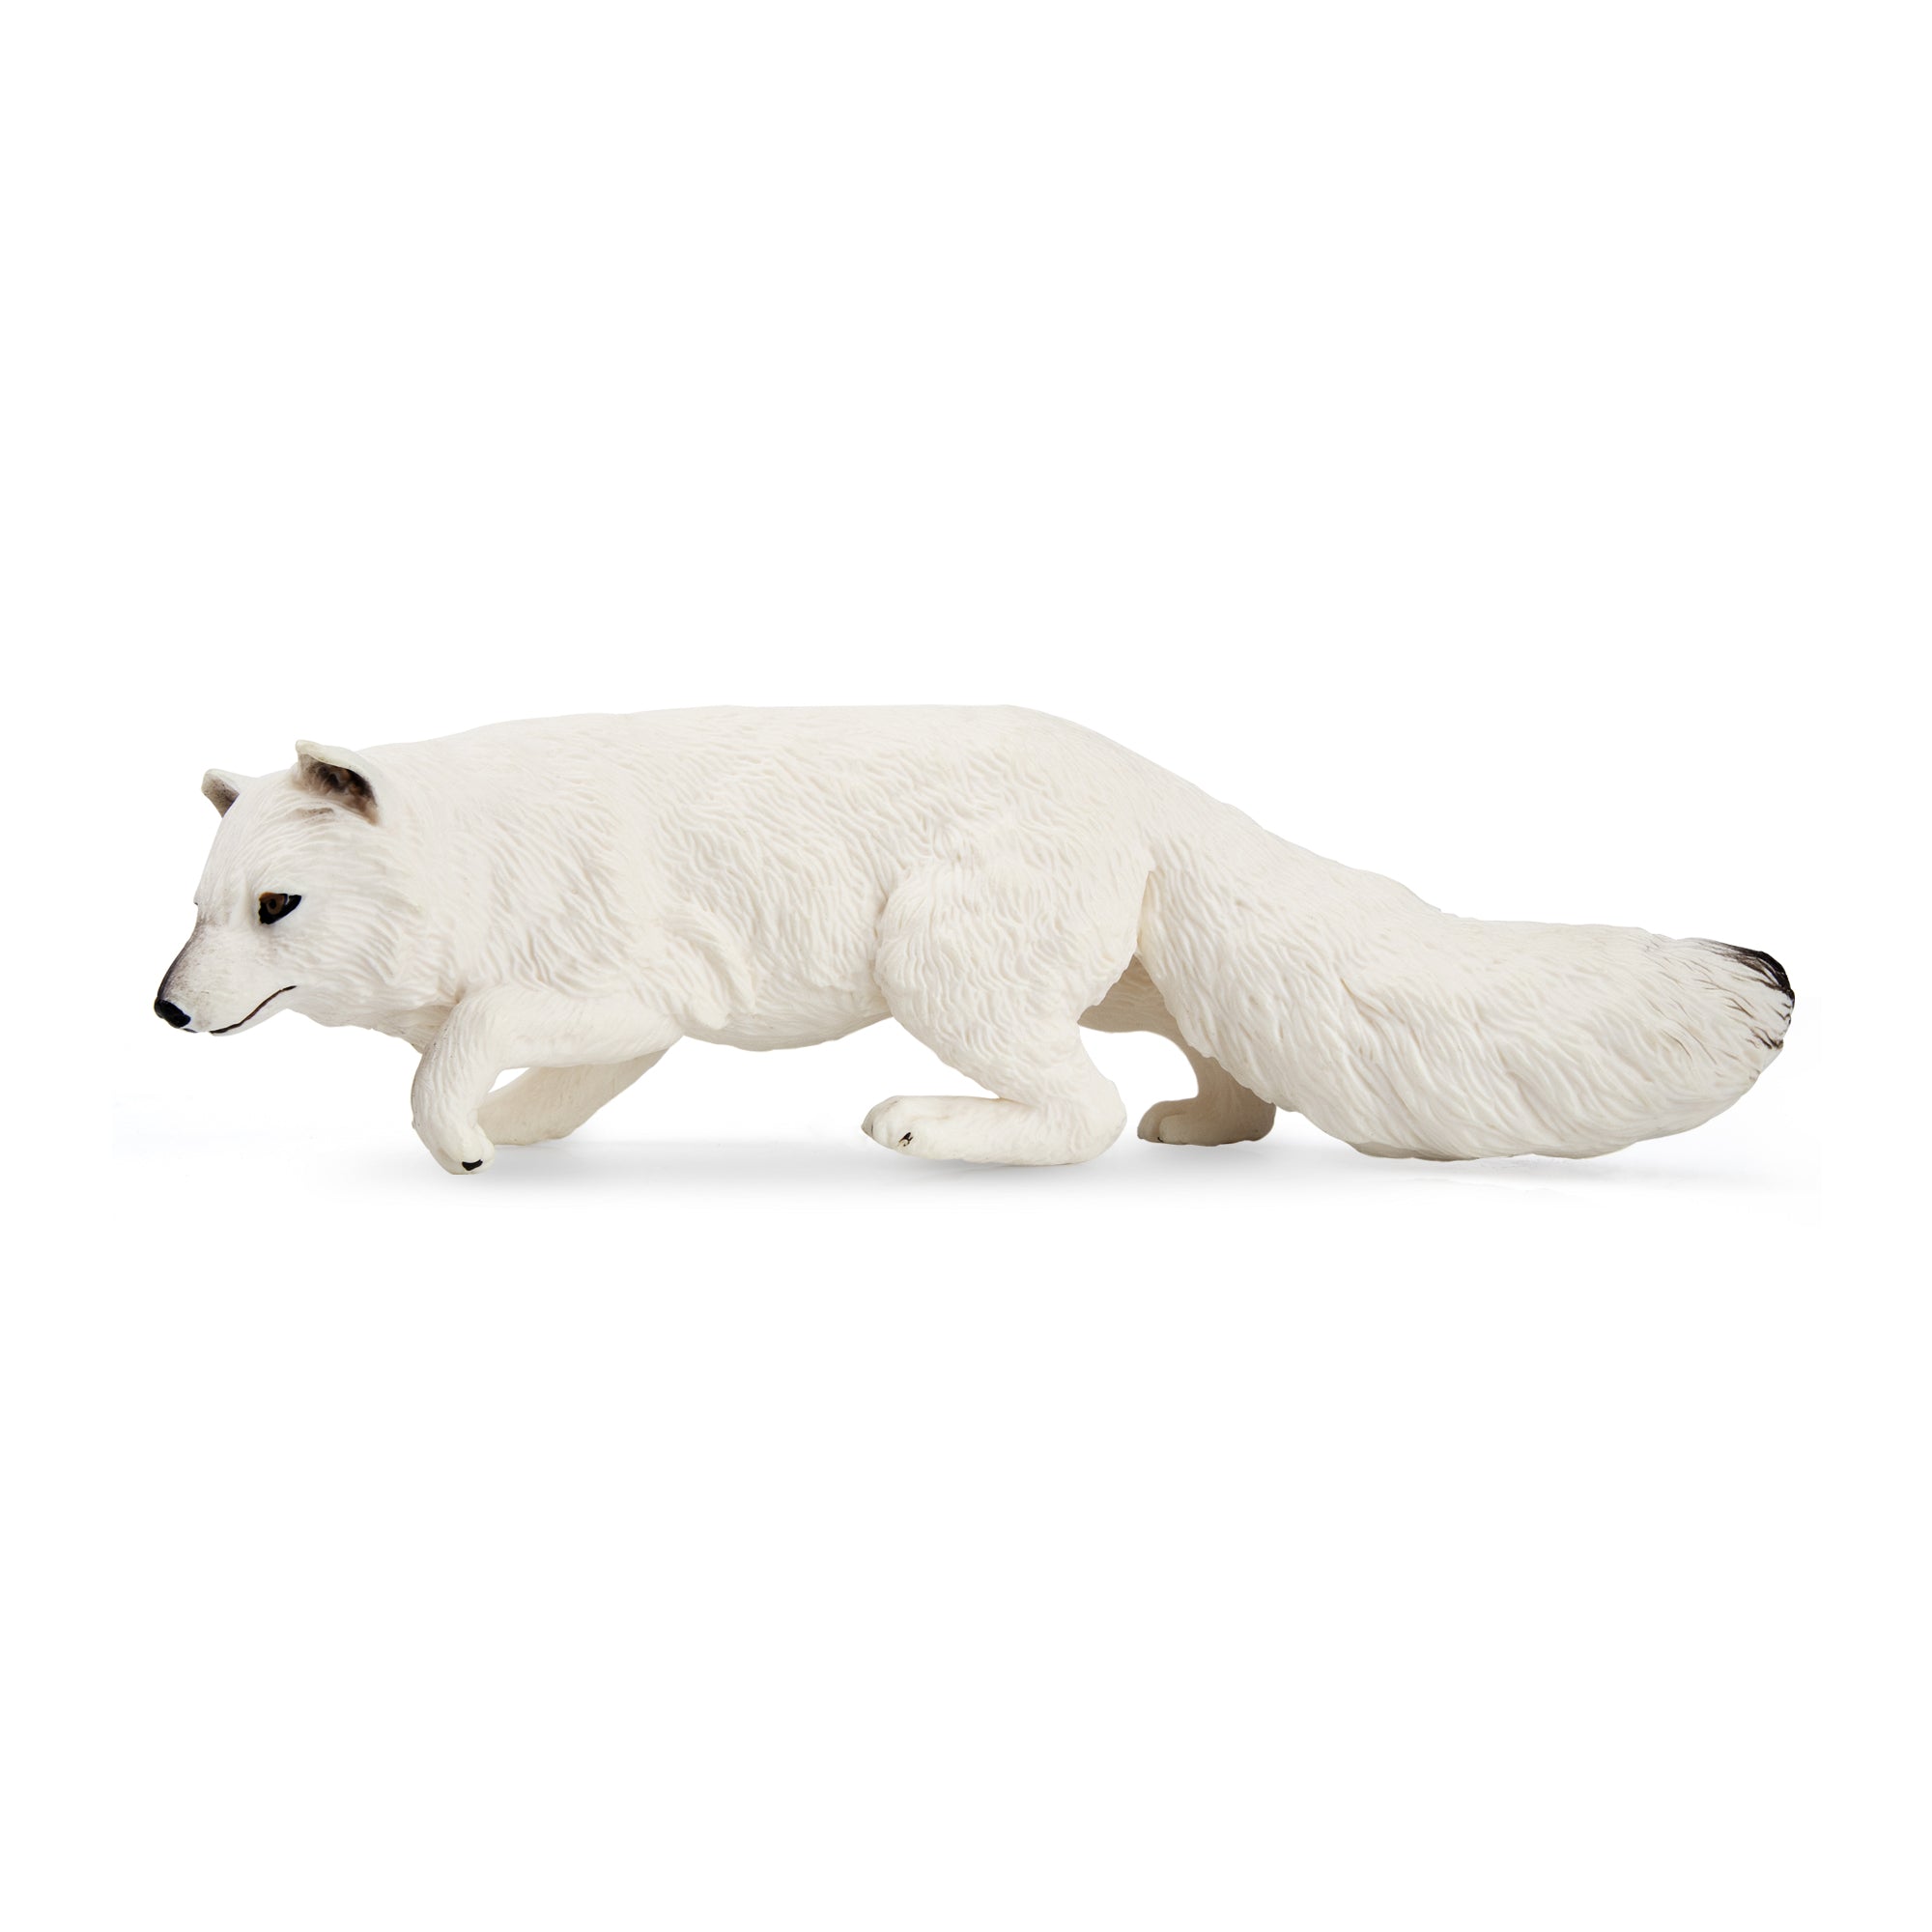 Arctic Fox Figurine Toy